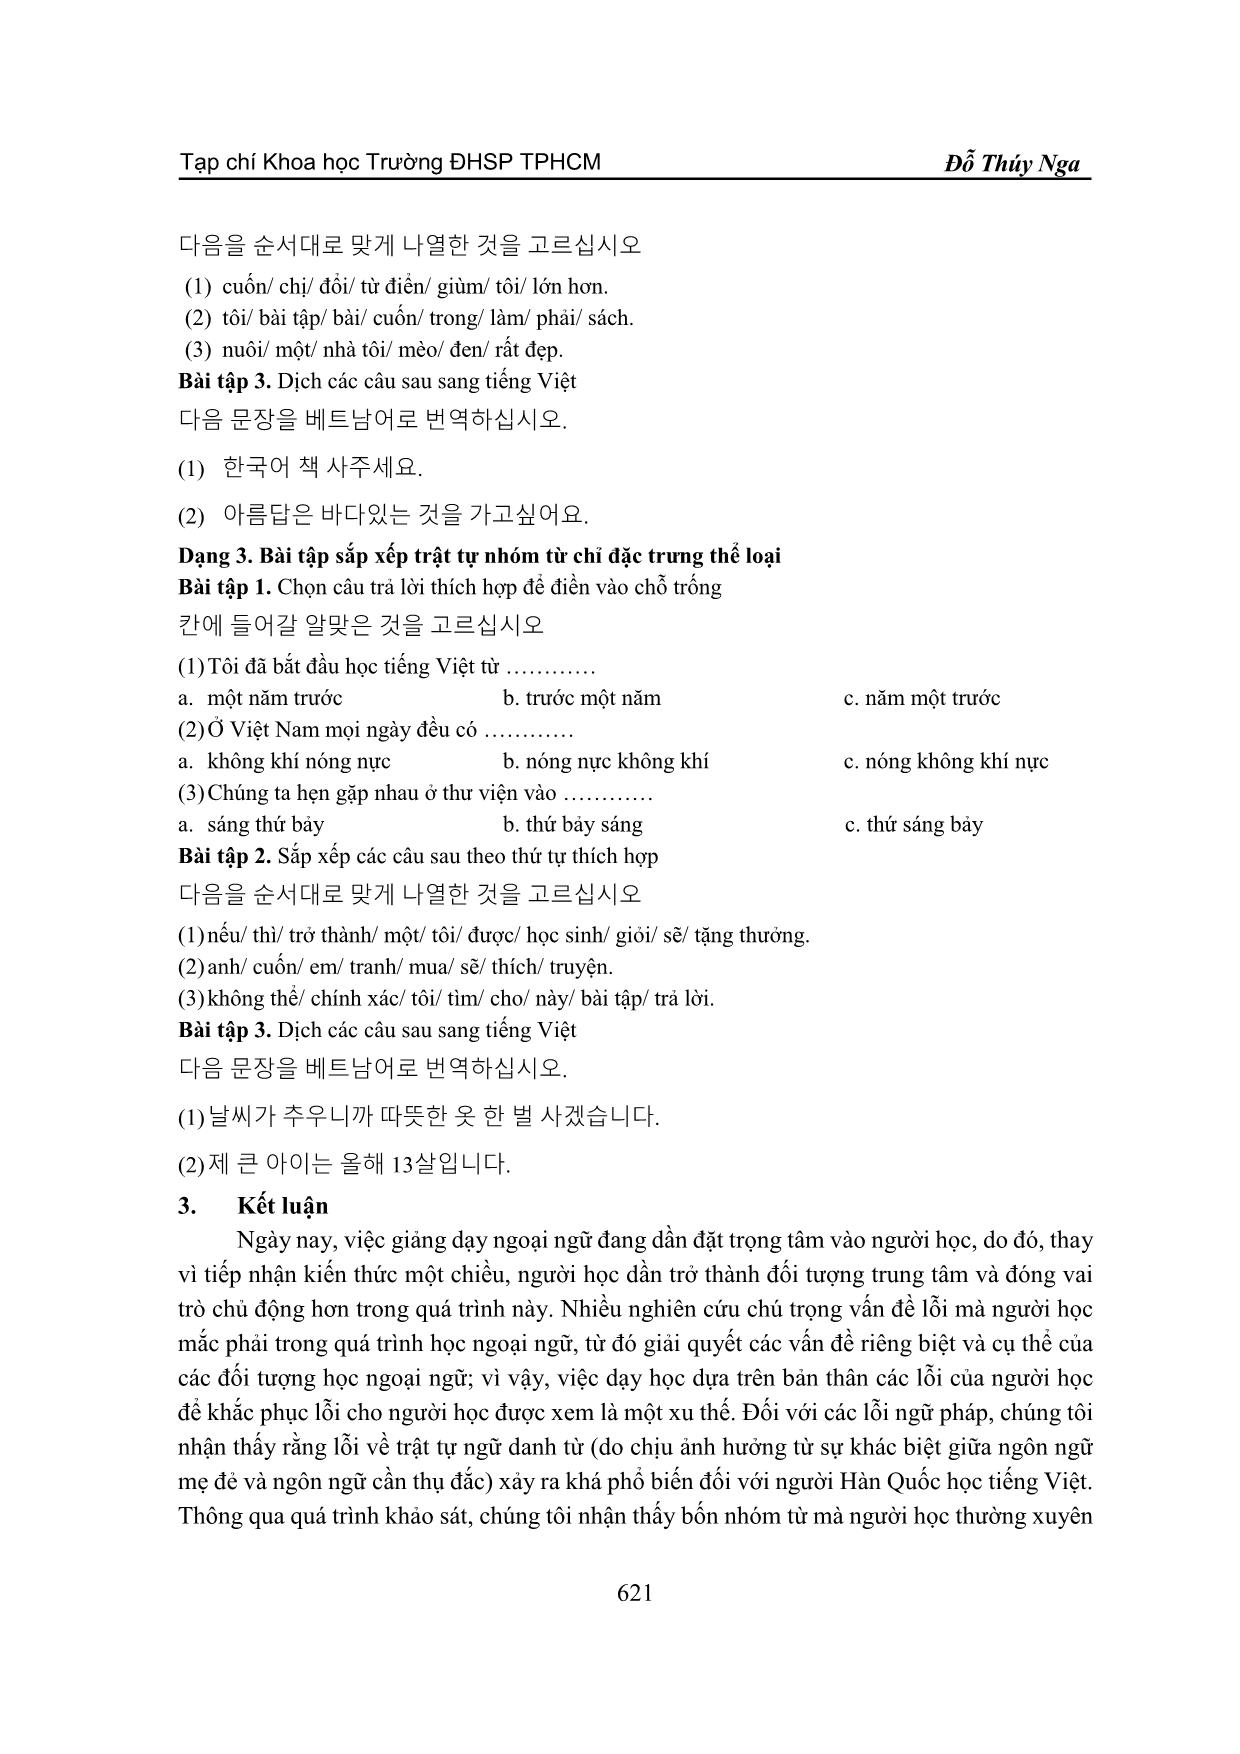 Lỗi sắp xếp trật tự trong ngữ đoạn danh từ của người Hàn quốc học Tiếng Việt trang 8